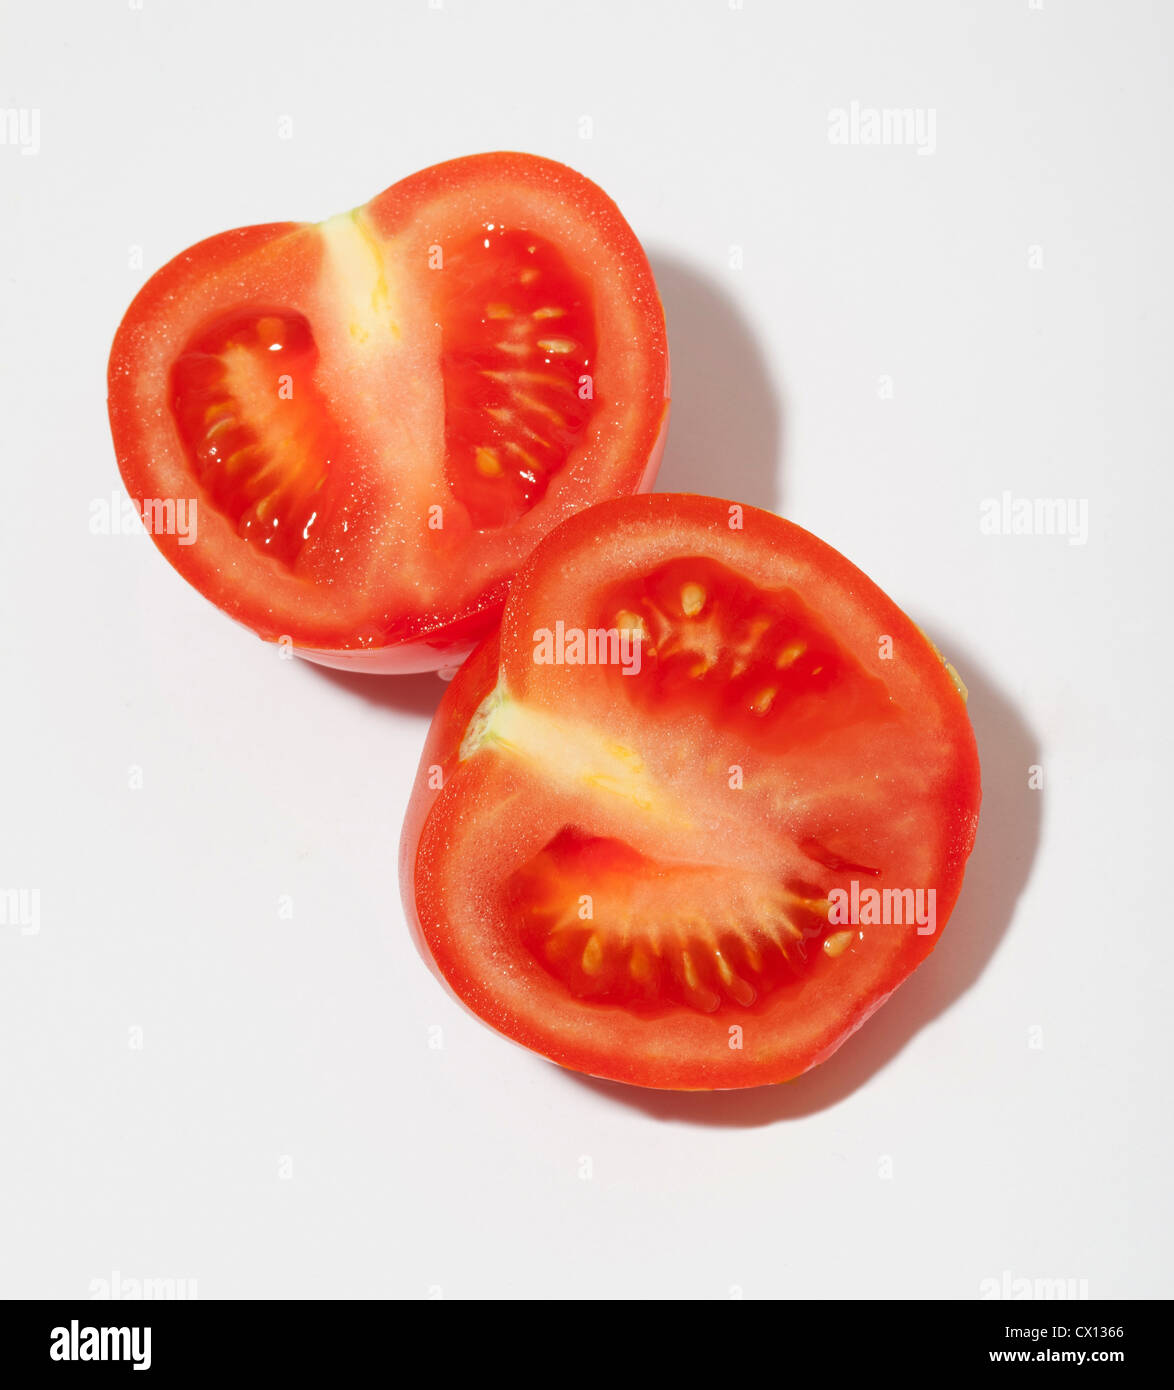 Two tomato halves Stock Photo